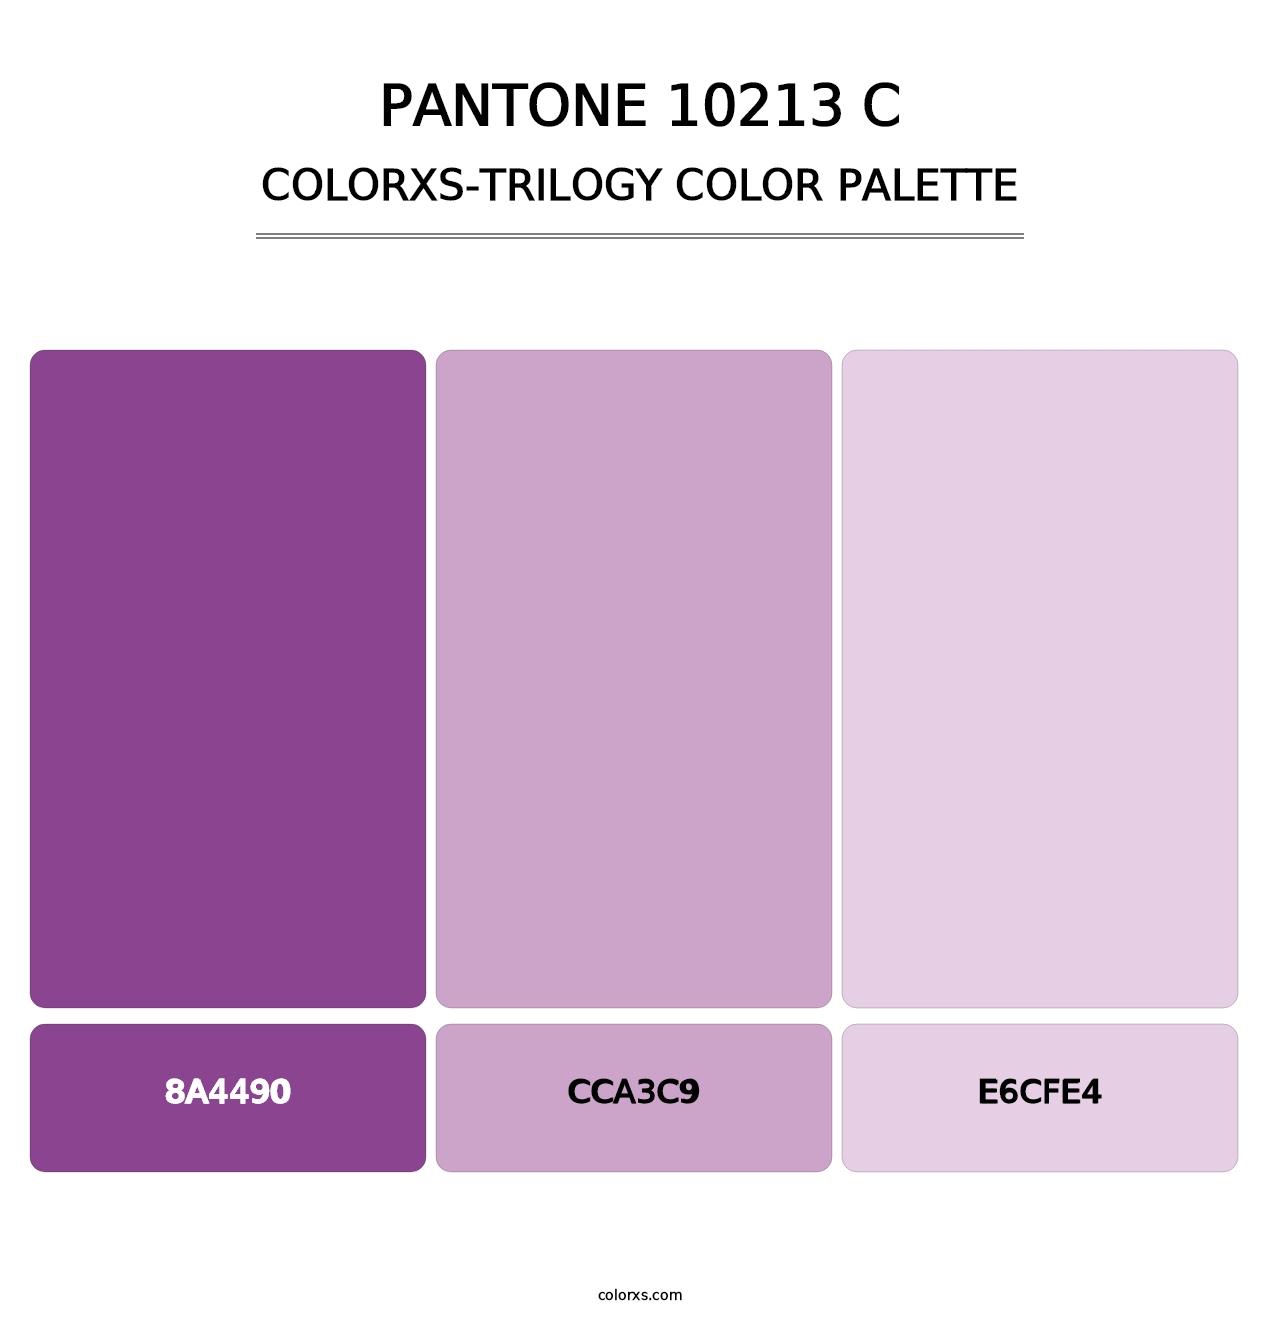 PANTONE 10213 C - Colorxs Trilogy Palette